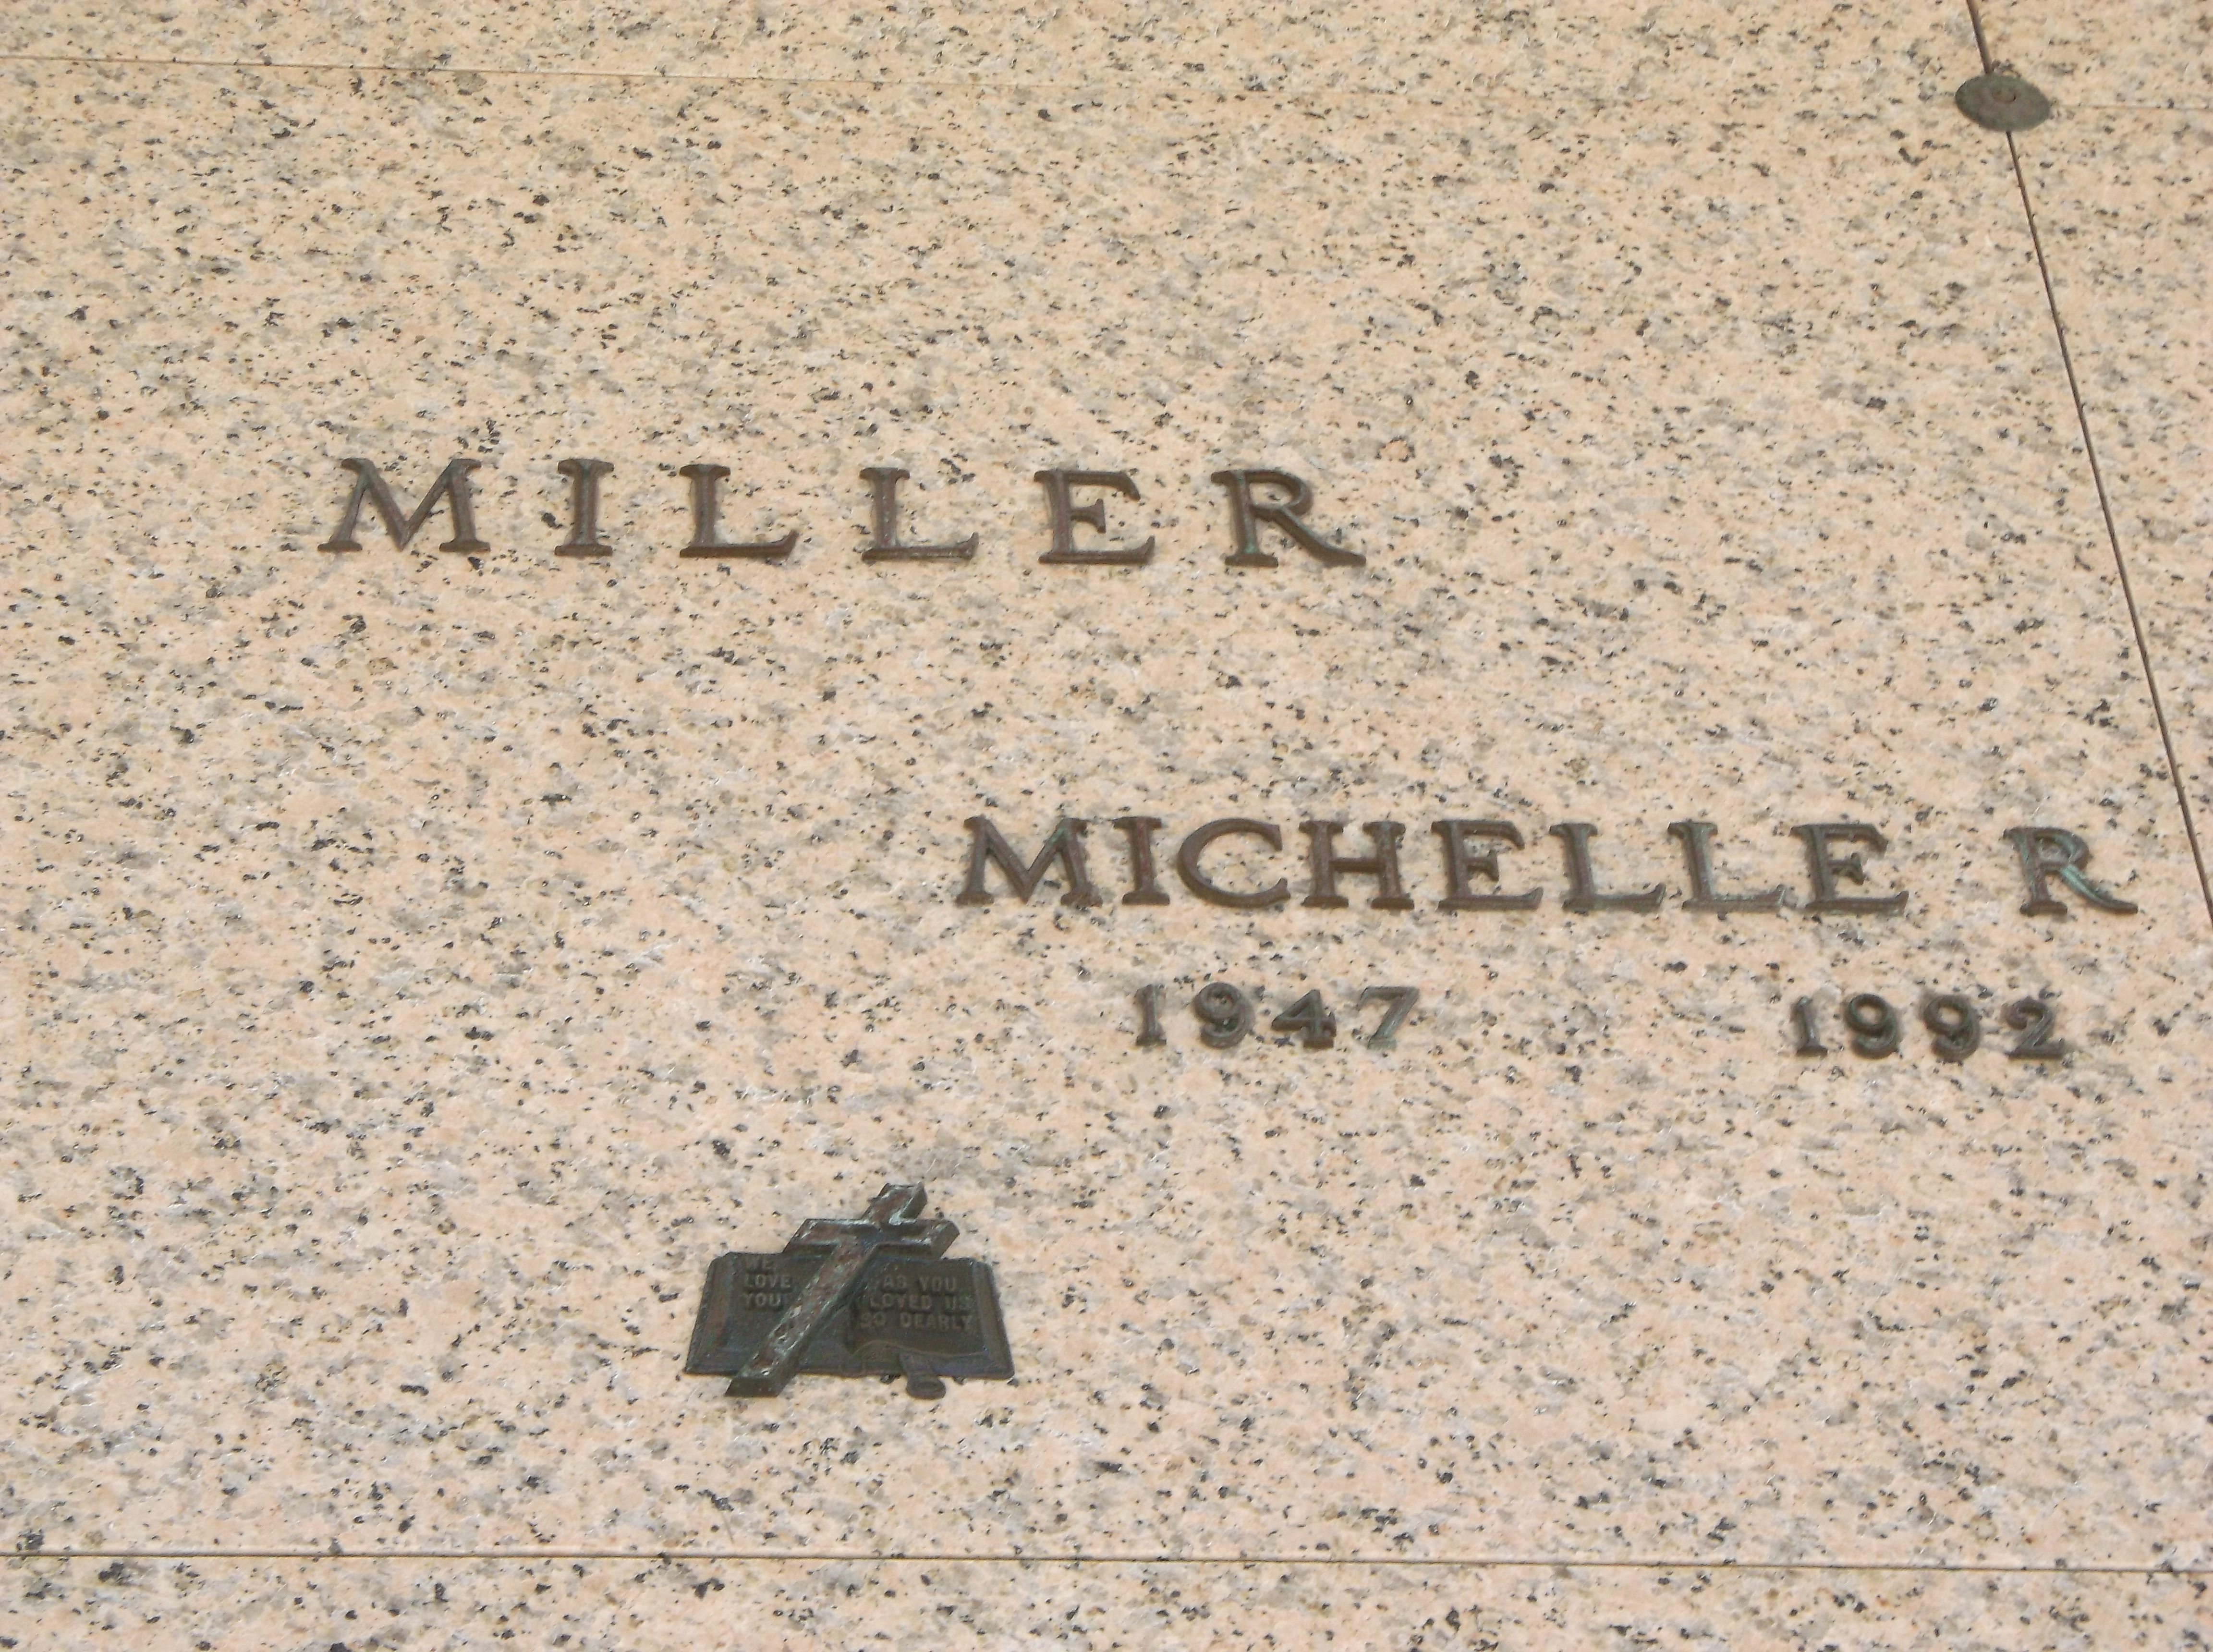 Michelle R Miller